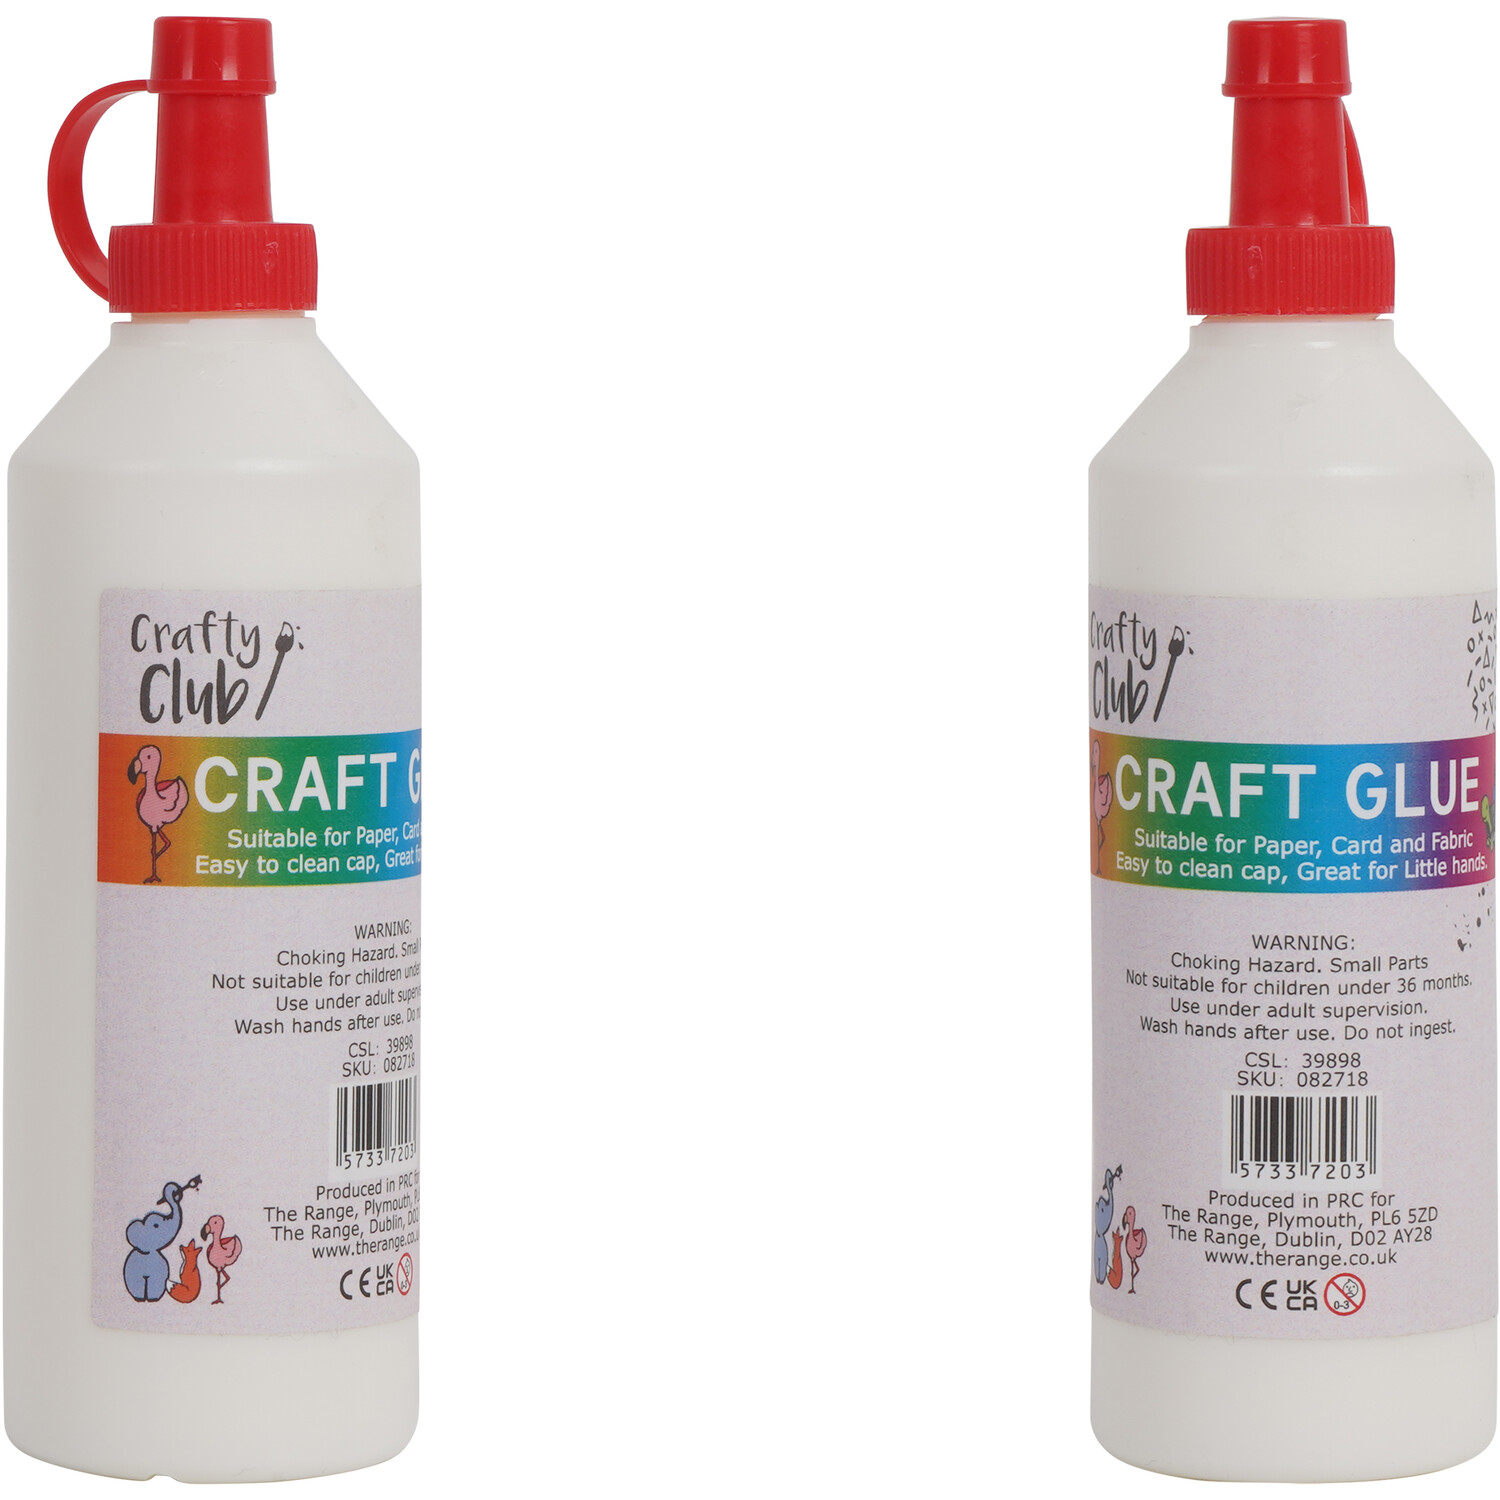 Crafty Club Craft Glue Image 2